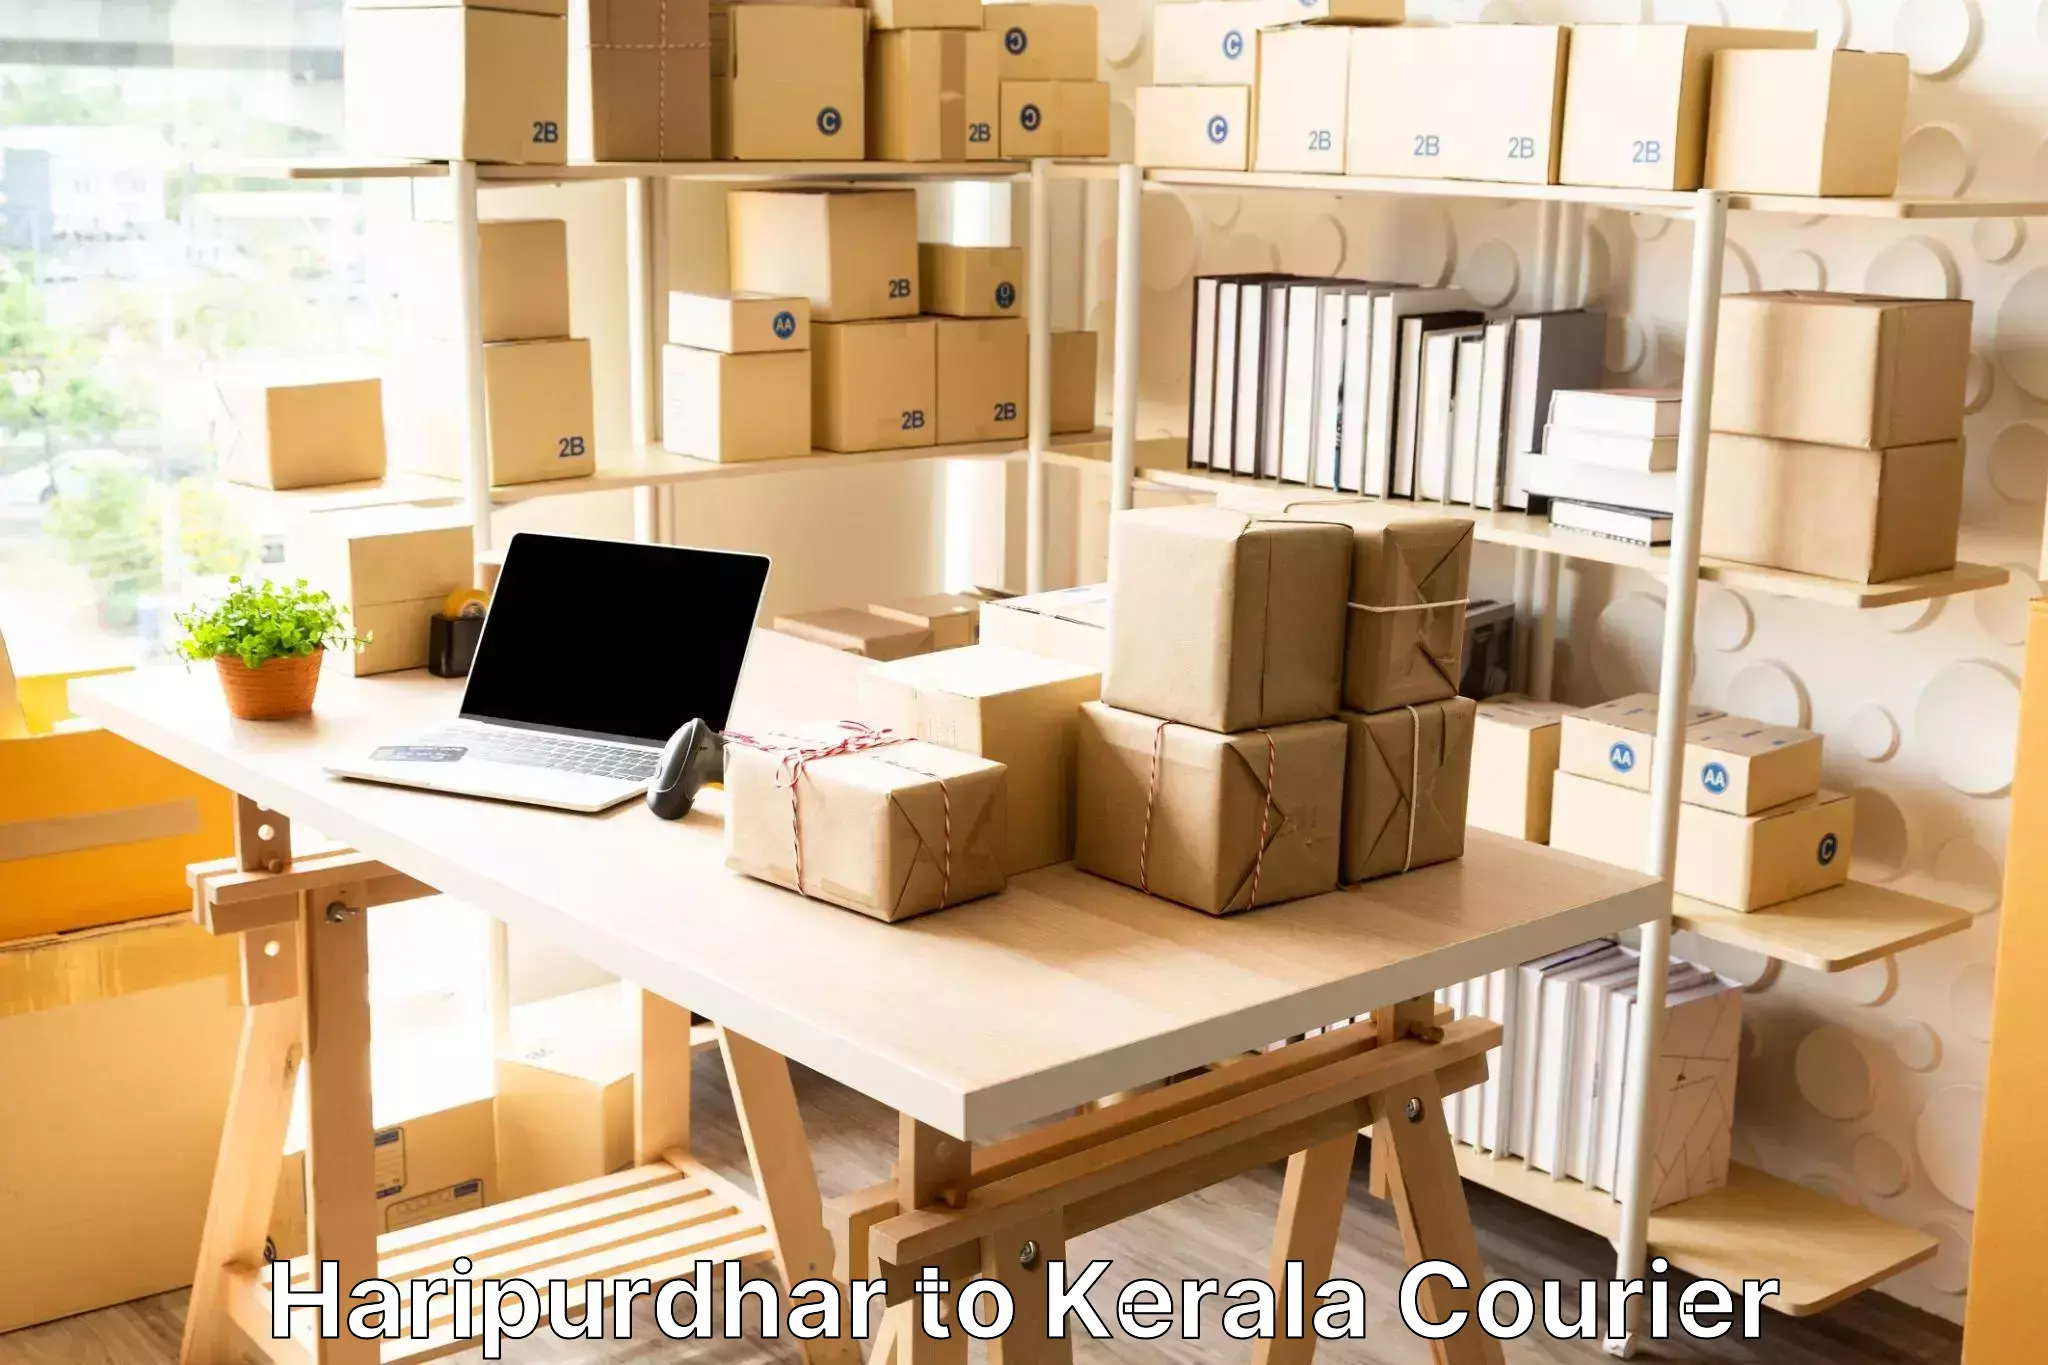 Luggage transport tips Haripurdhar to Kerala